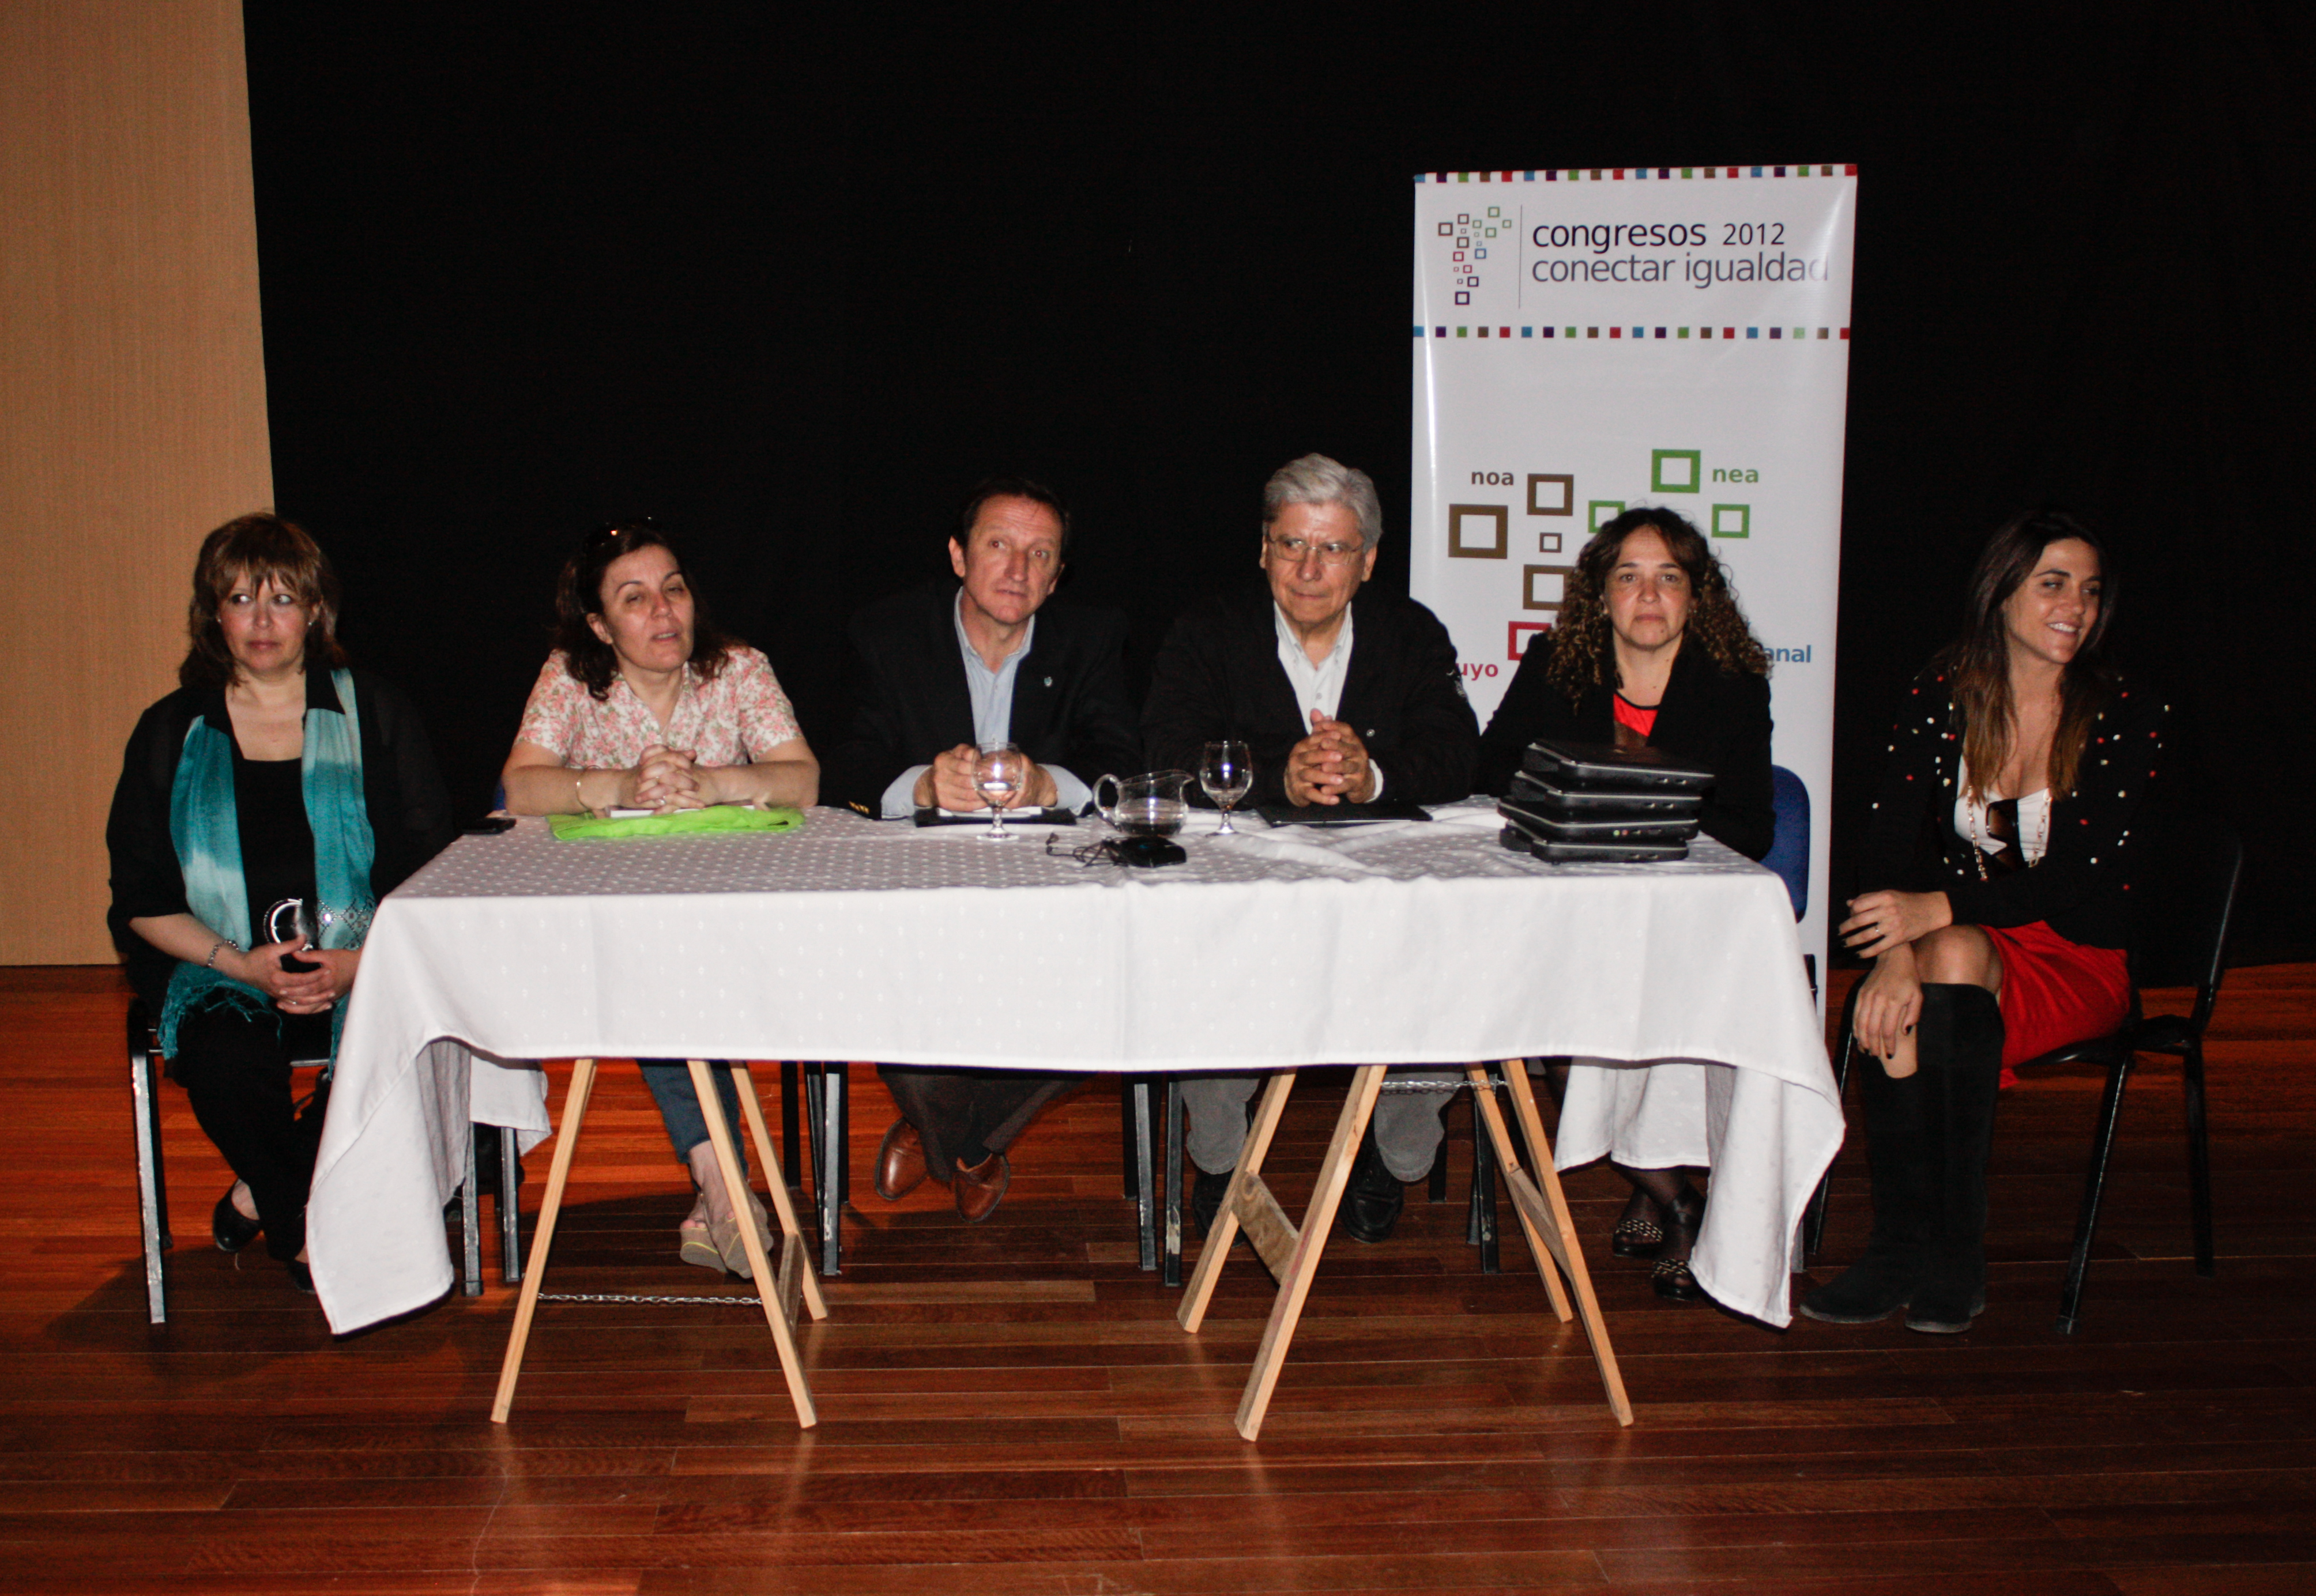 Parlamento juvenil - IV Congreso Conectar Igualdad (Patagonia)